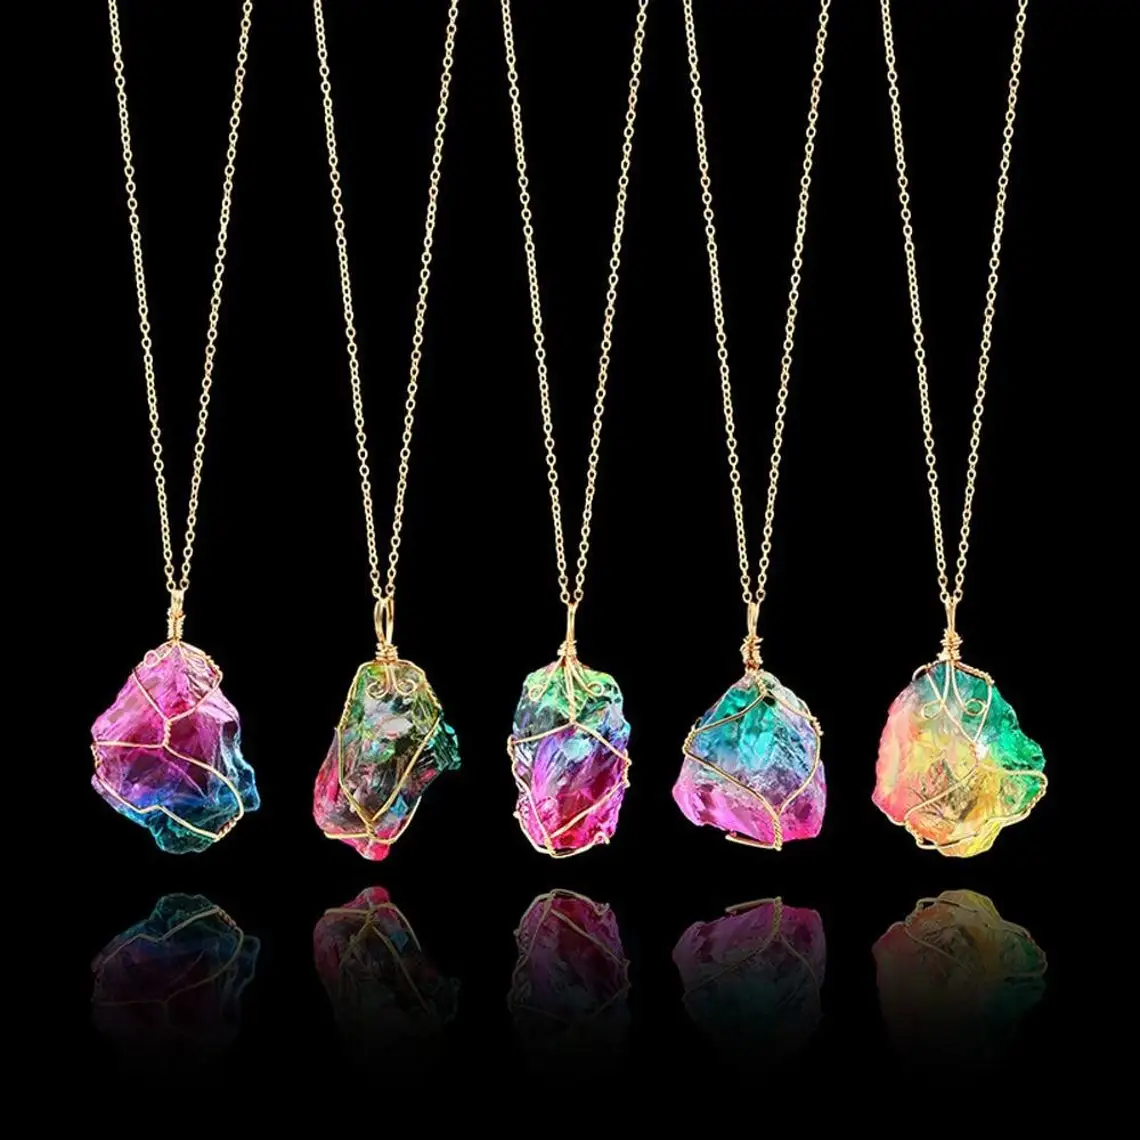 Rainbow Stone Pendant Necklace, Fashion Crystal Chakra Rock Necklace, Golden Color Chain Quartz Pendant Necklace for Women